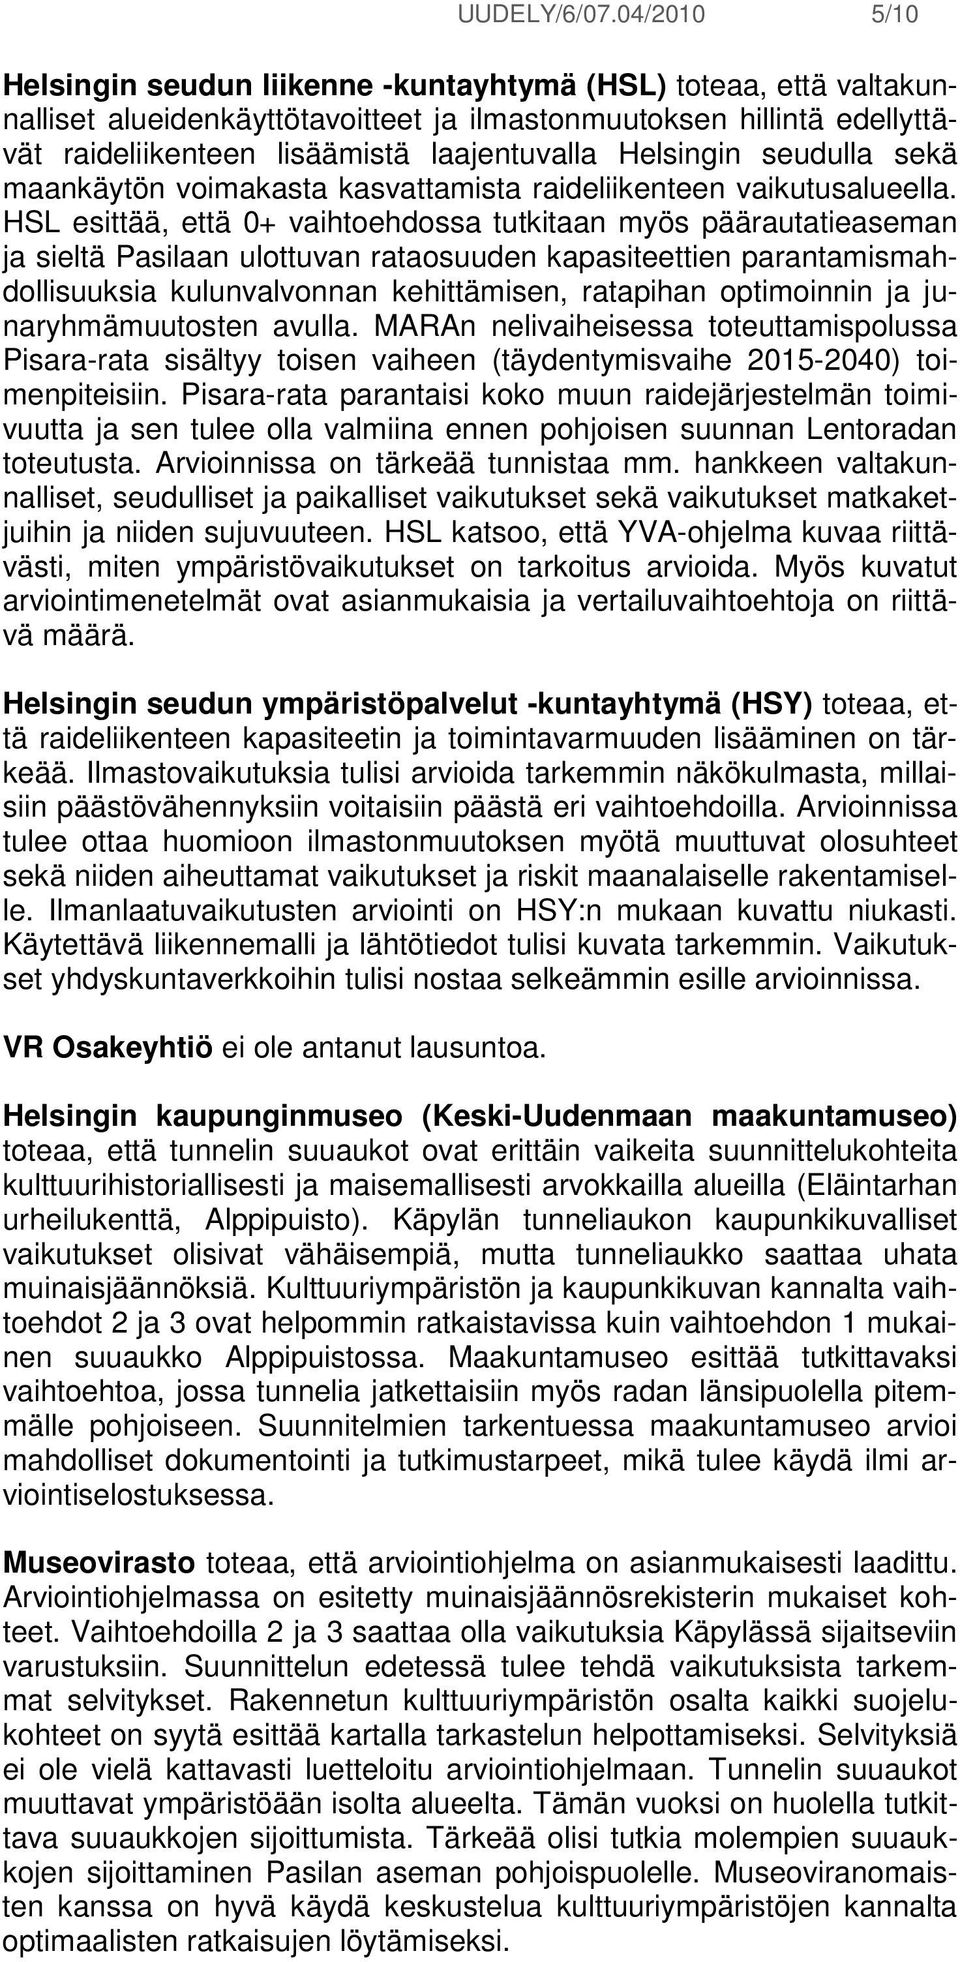 Helsingin seudulla sekä maankäytön voimakasta kasvattamista raideliikenteen vaikutusalueella.